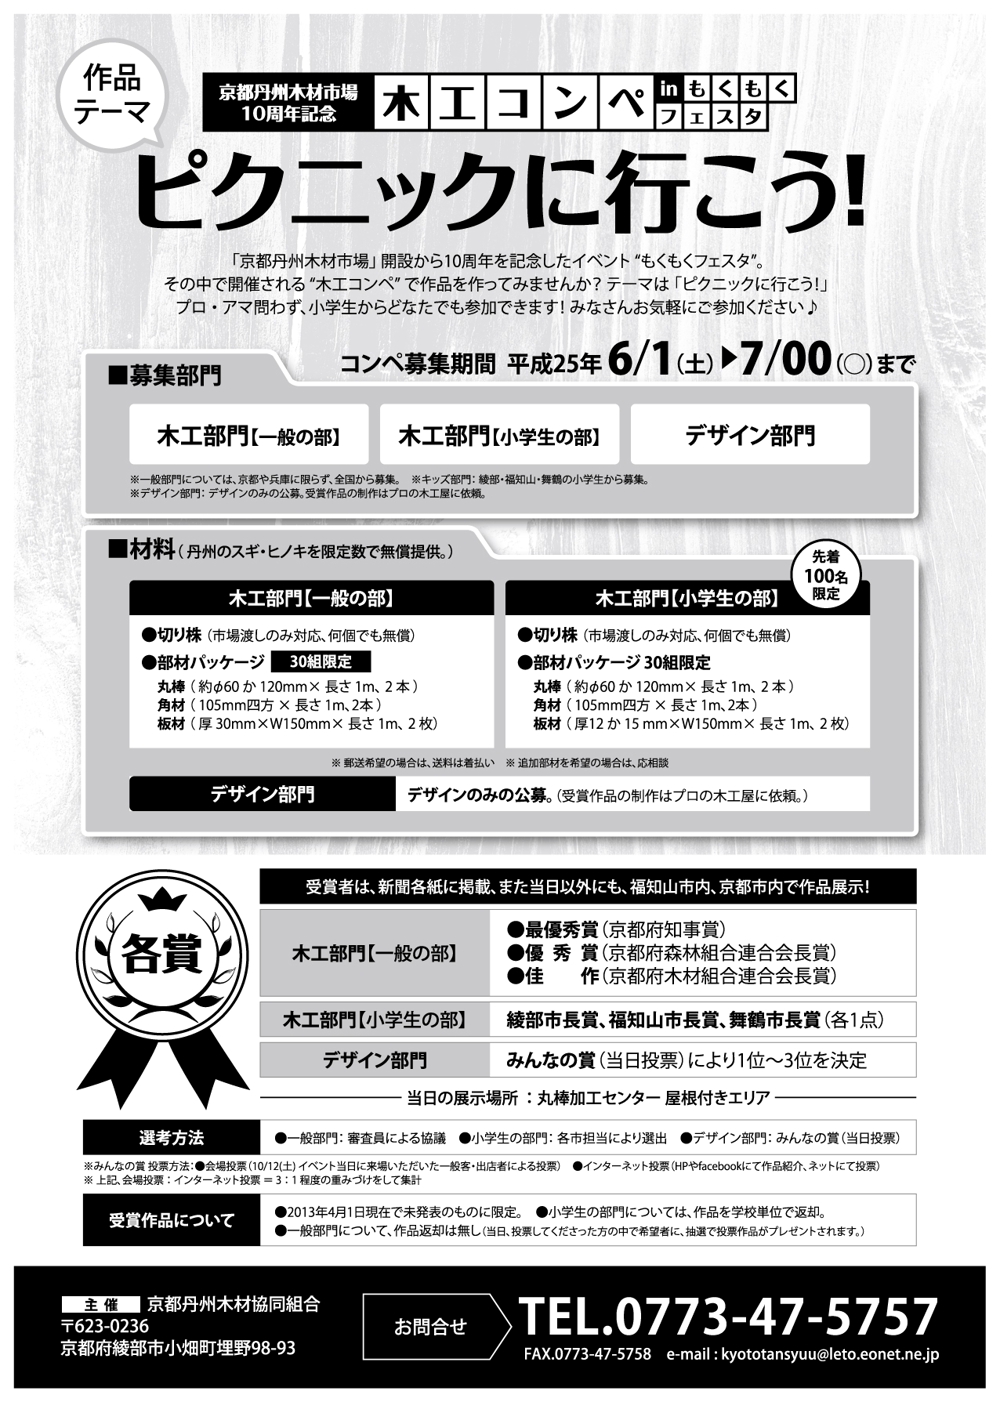 京都の木材市場の記念イベントの「木工コンペ」告知・作品募集チラシの制作